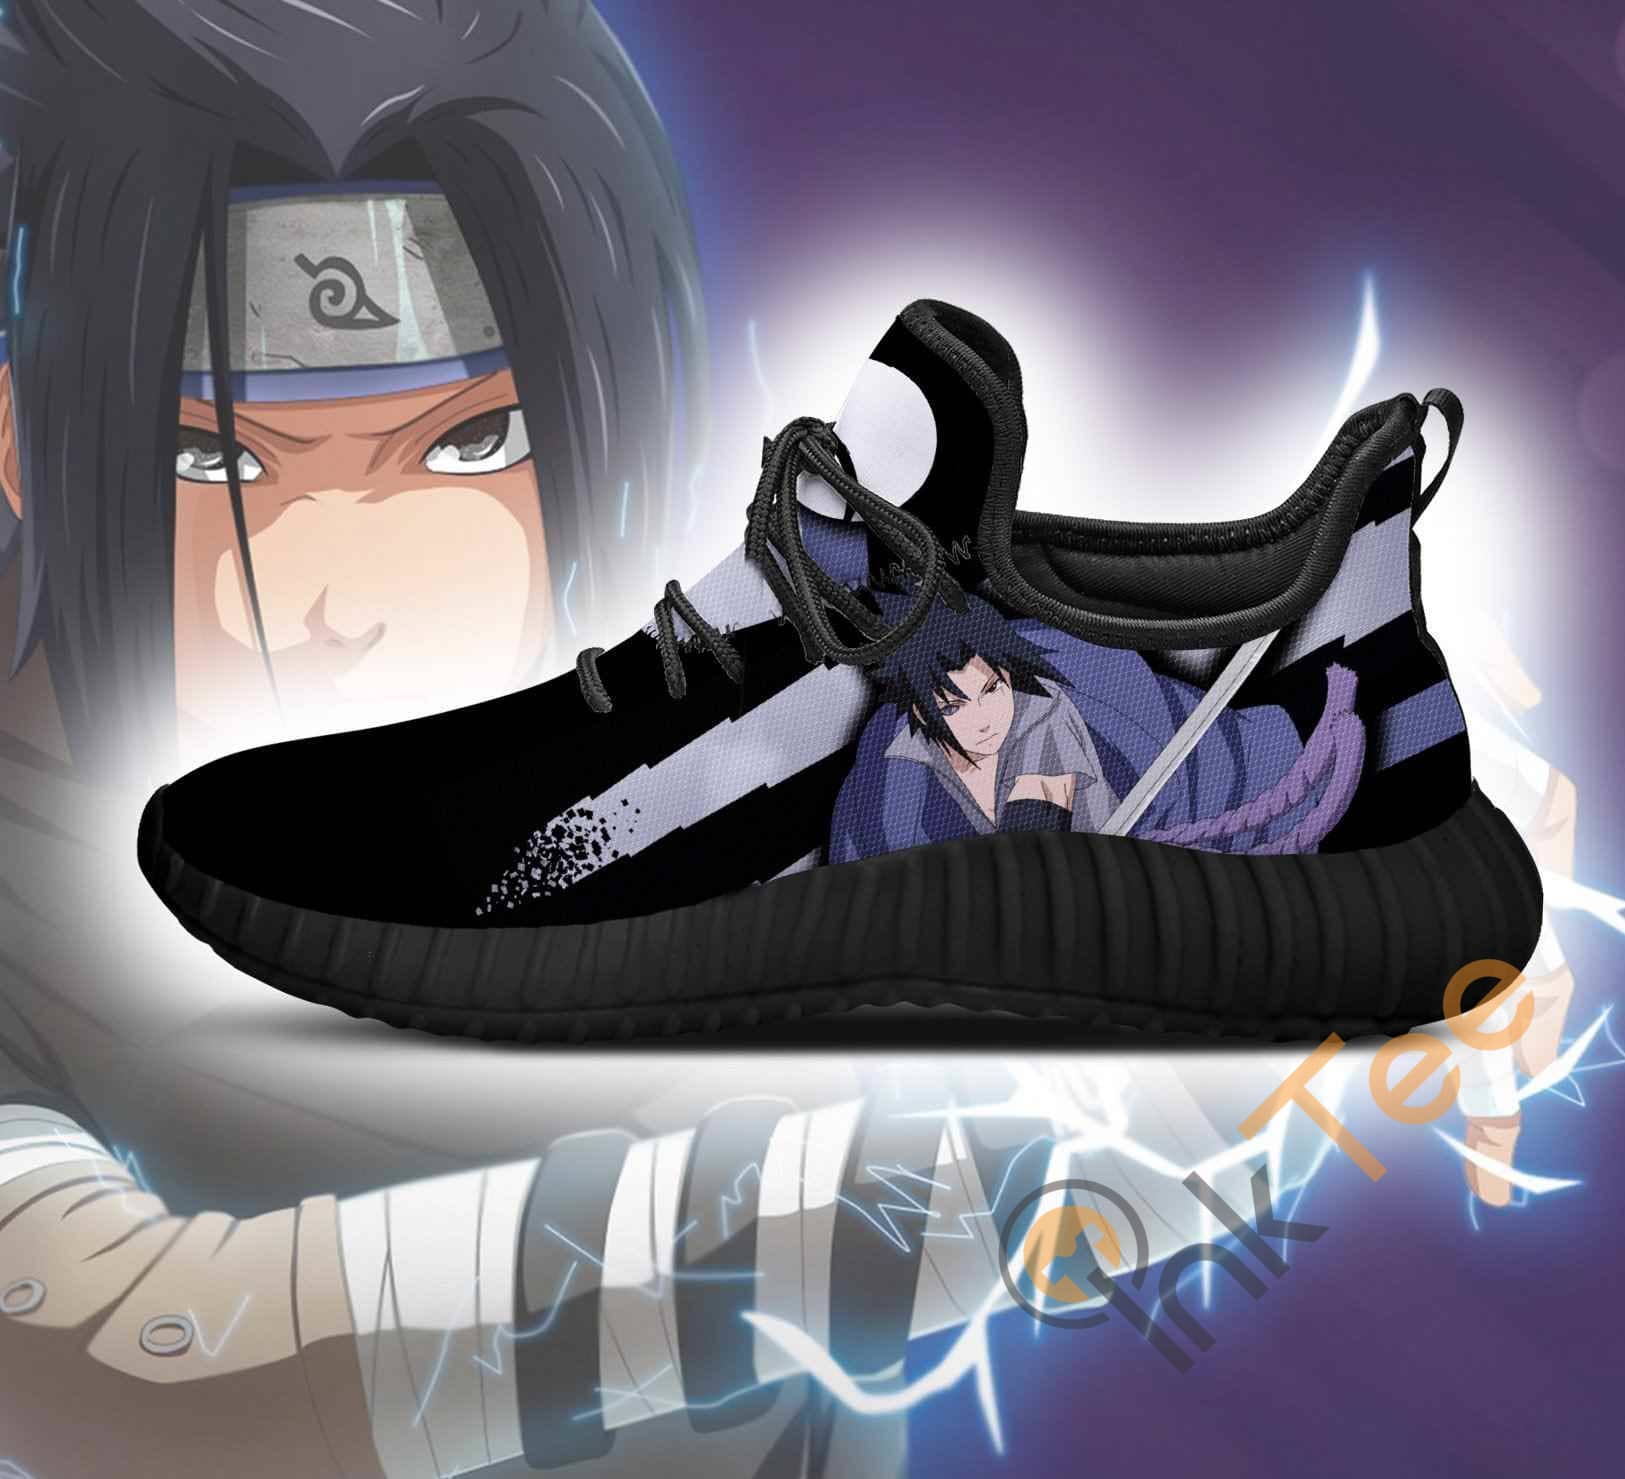 Inktee Store - Sasuke Jutsu Naruto Anime Reze Shoes Image